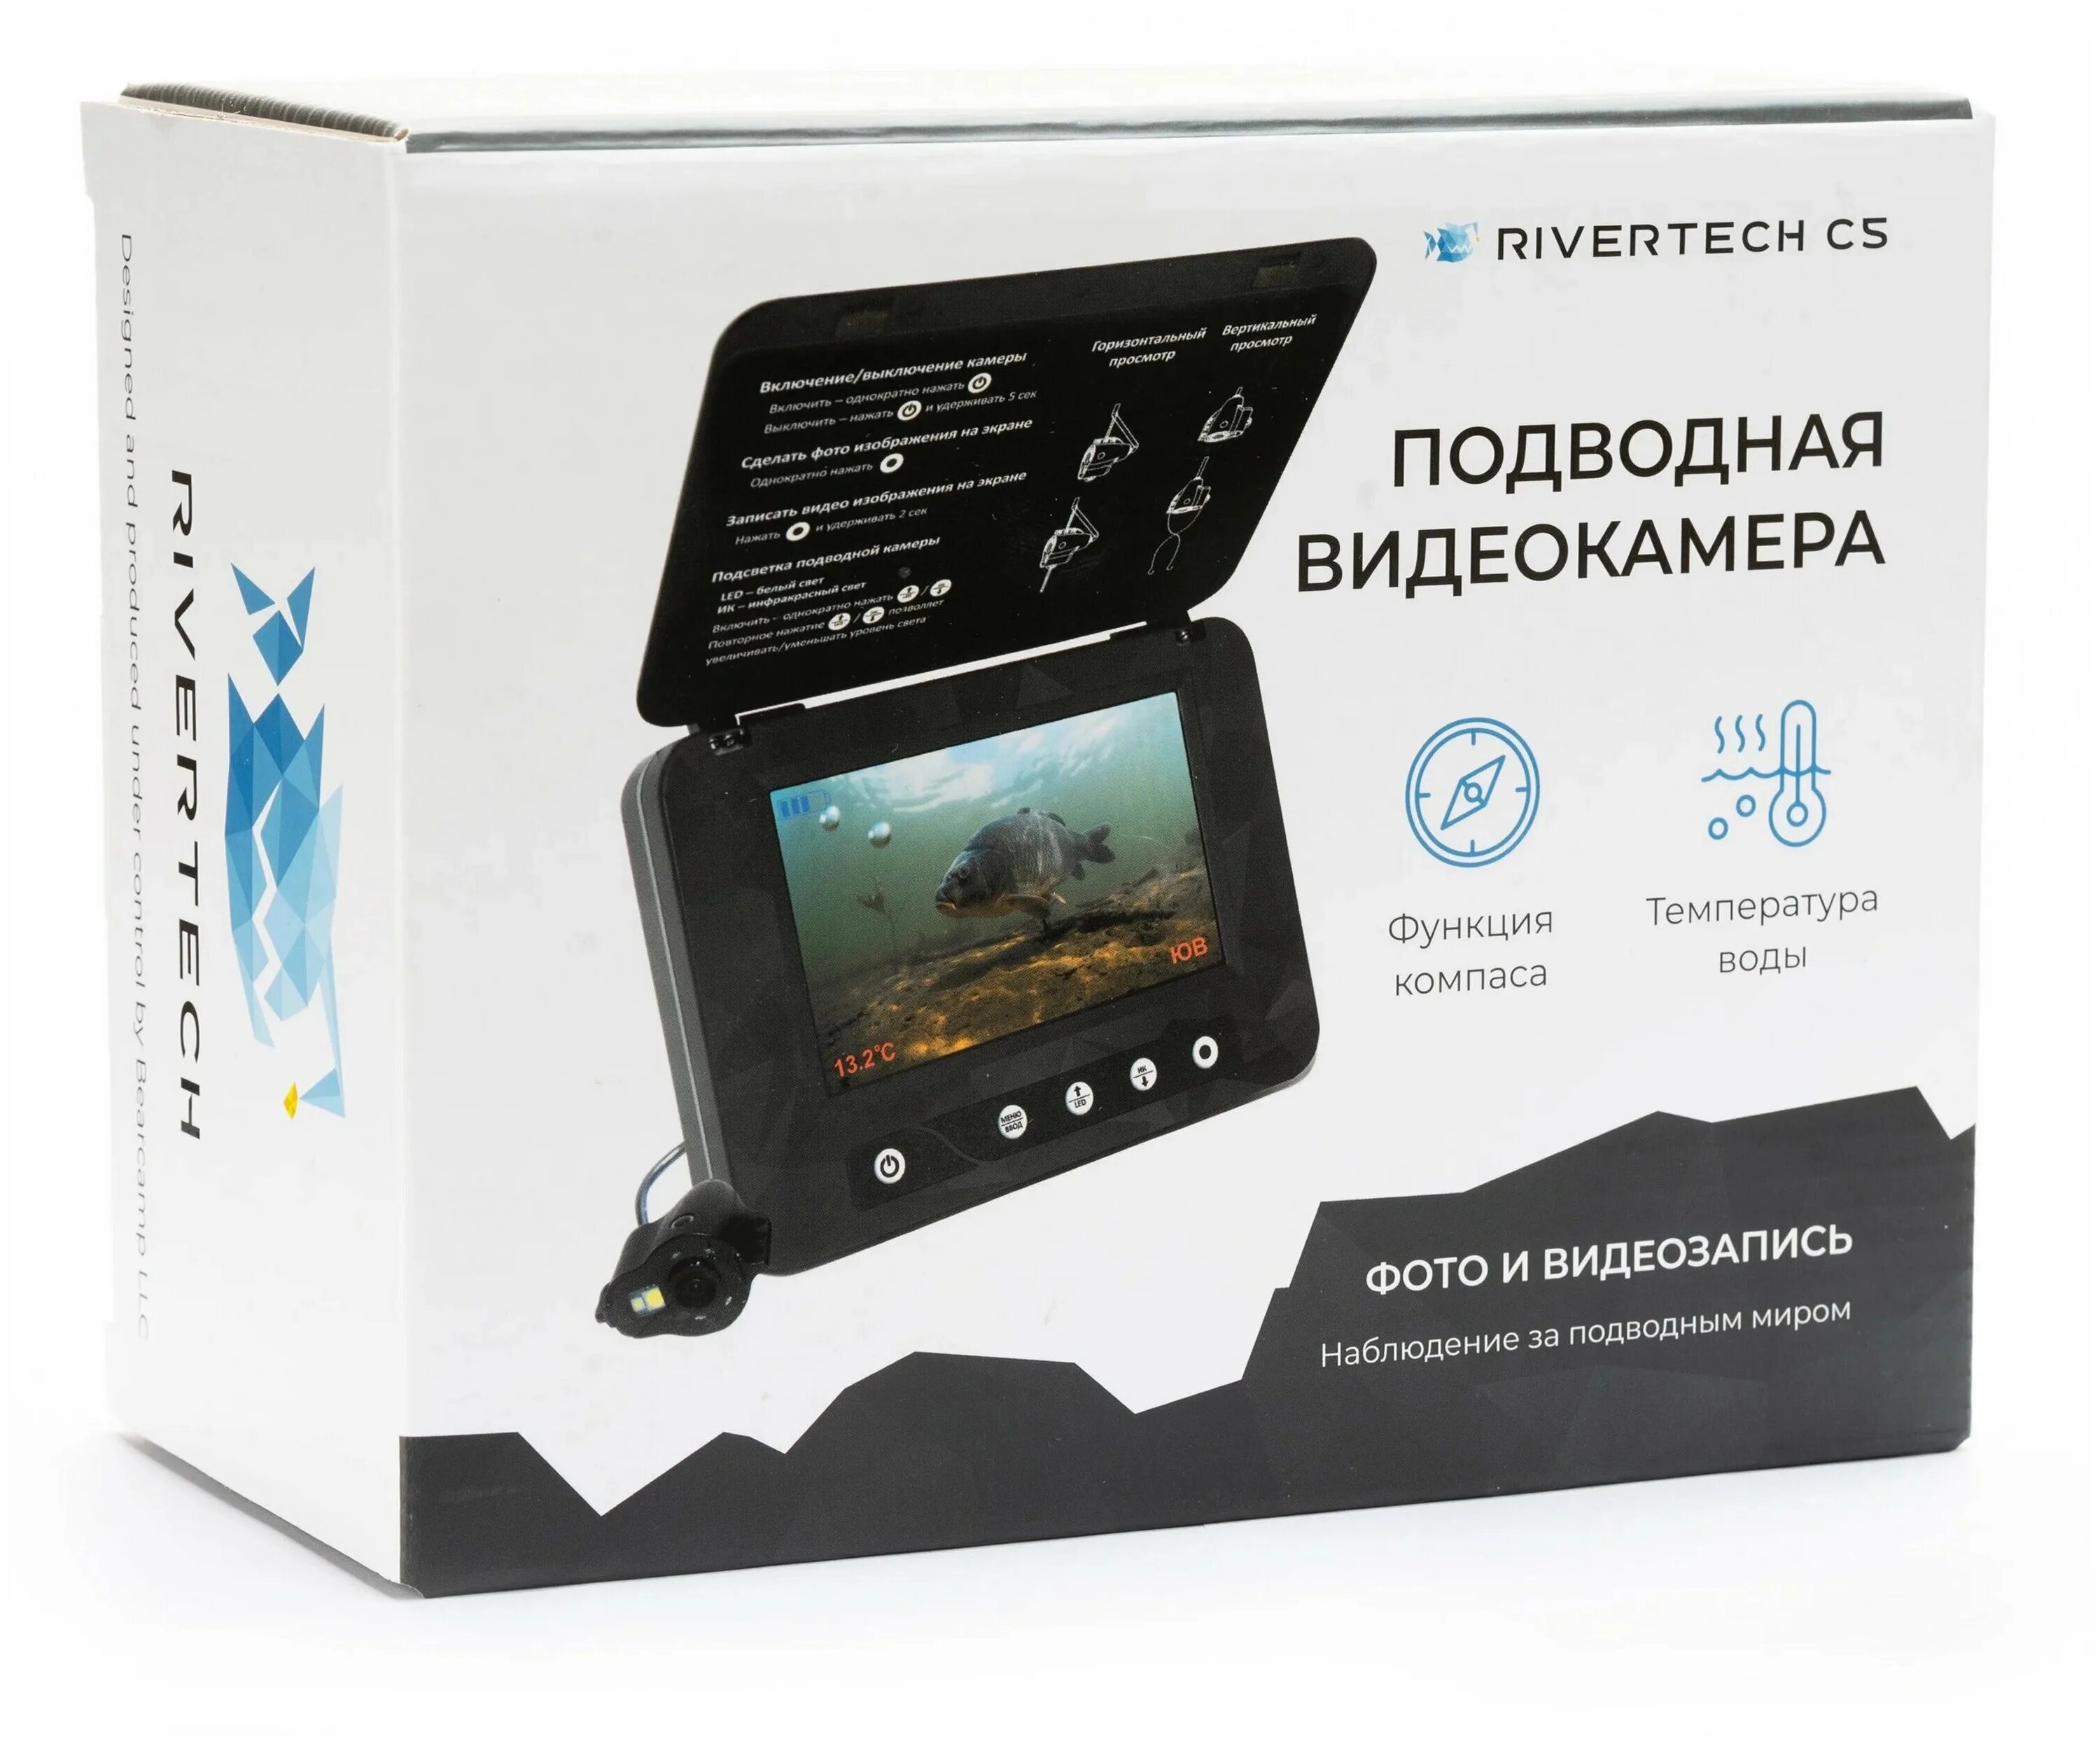 Подводная видеокамера Rivertech c5. Подводная камера для рыбалки РИВЕРТЕХ. Подводная камера фишка 350. Подводные камеры для рыбалки характеристики и цены.